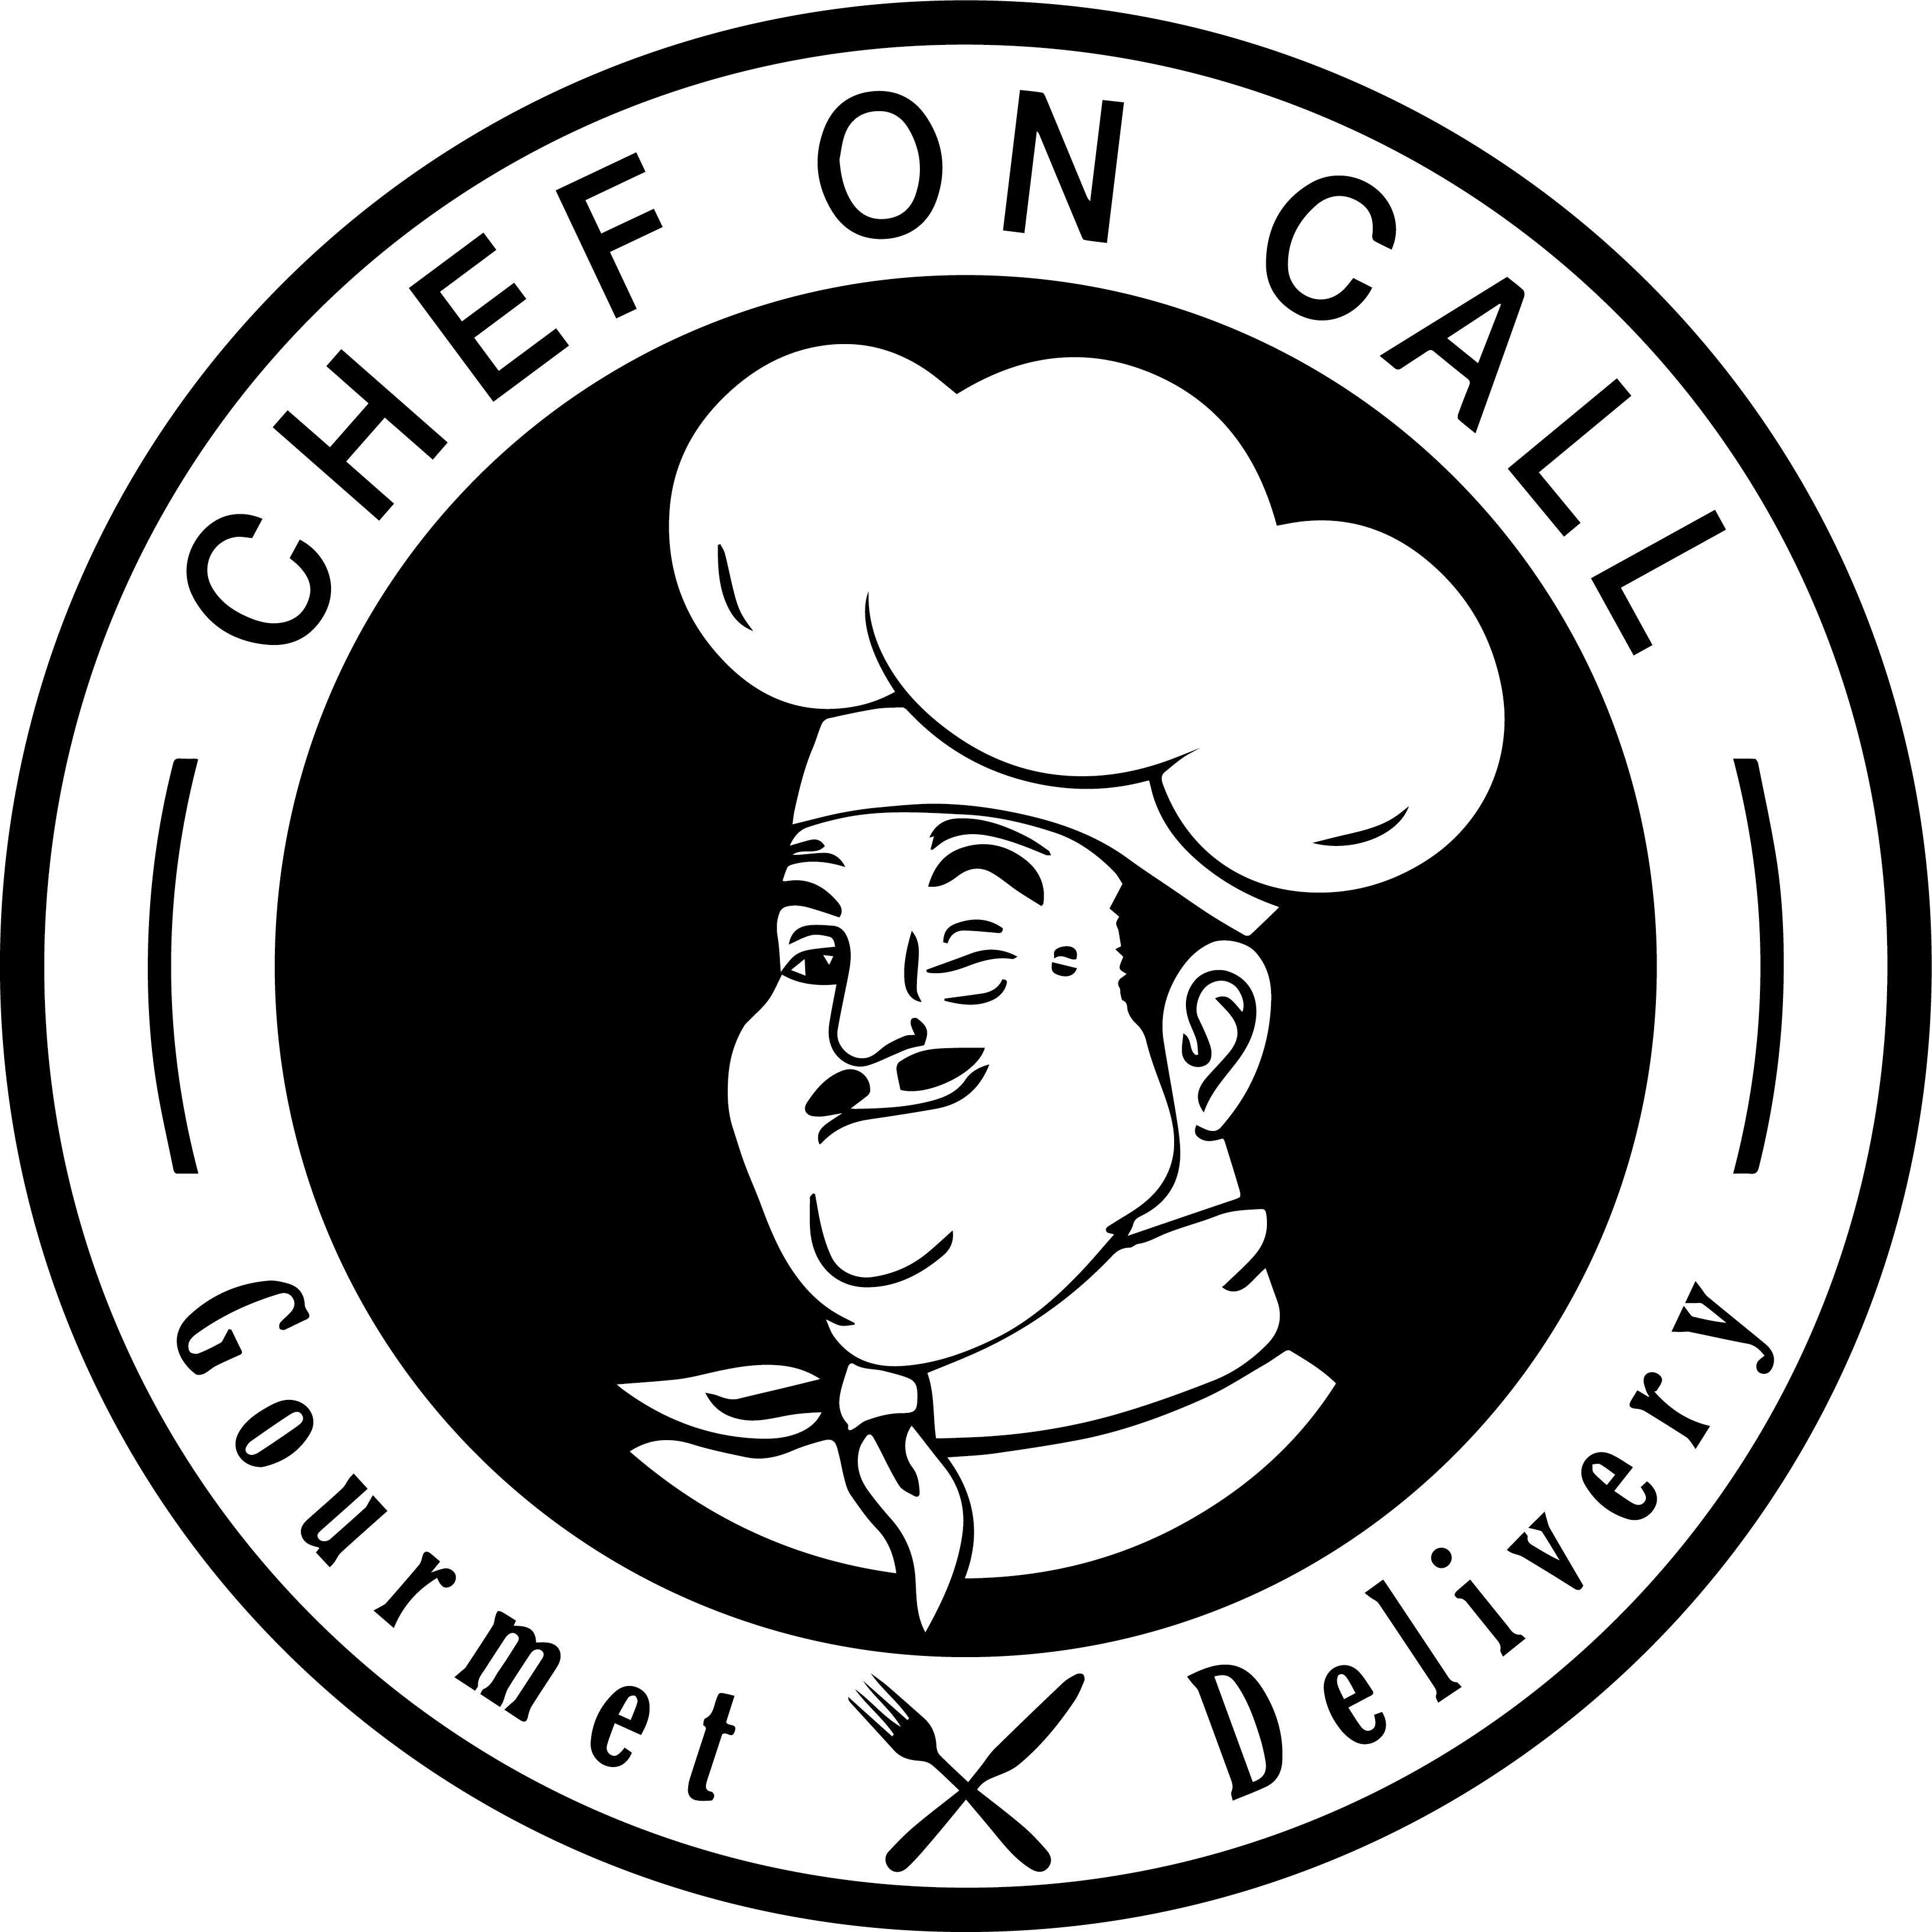 Chef On Call v2